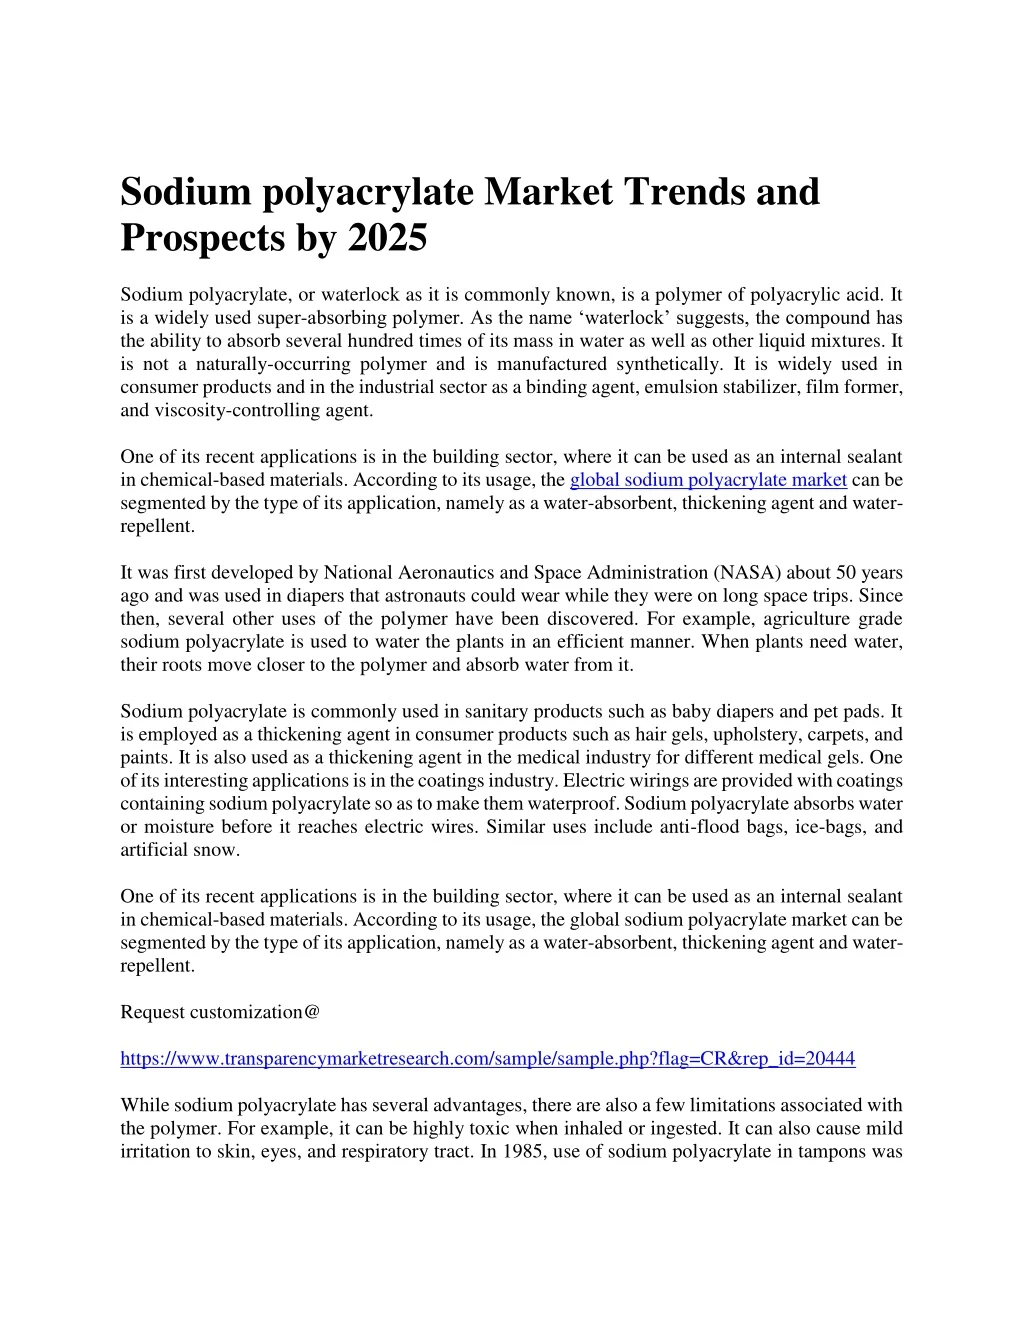 sodium polyacrylate market trends and prospects